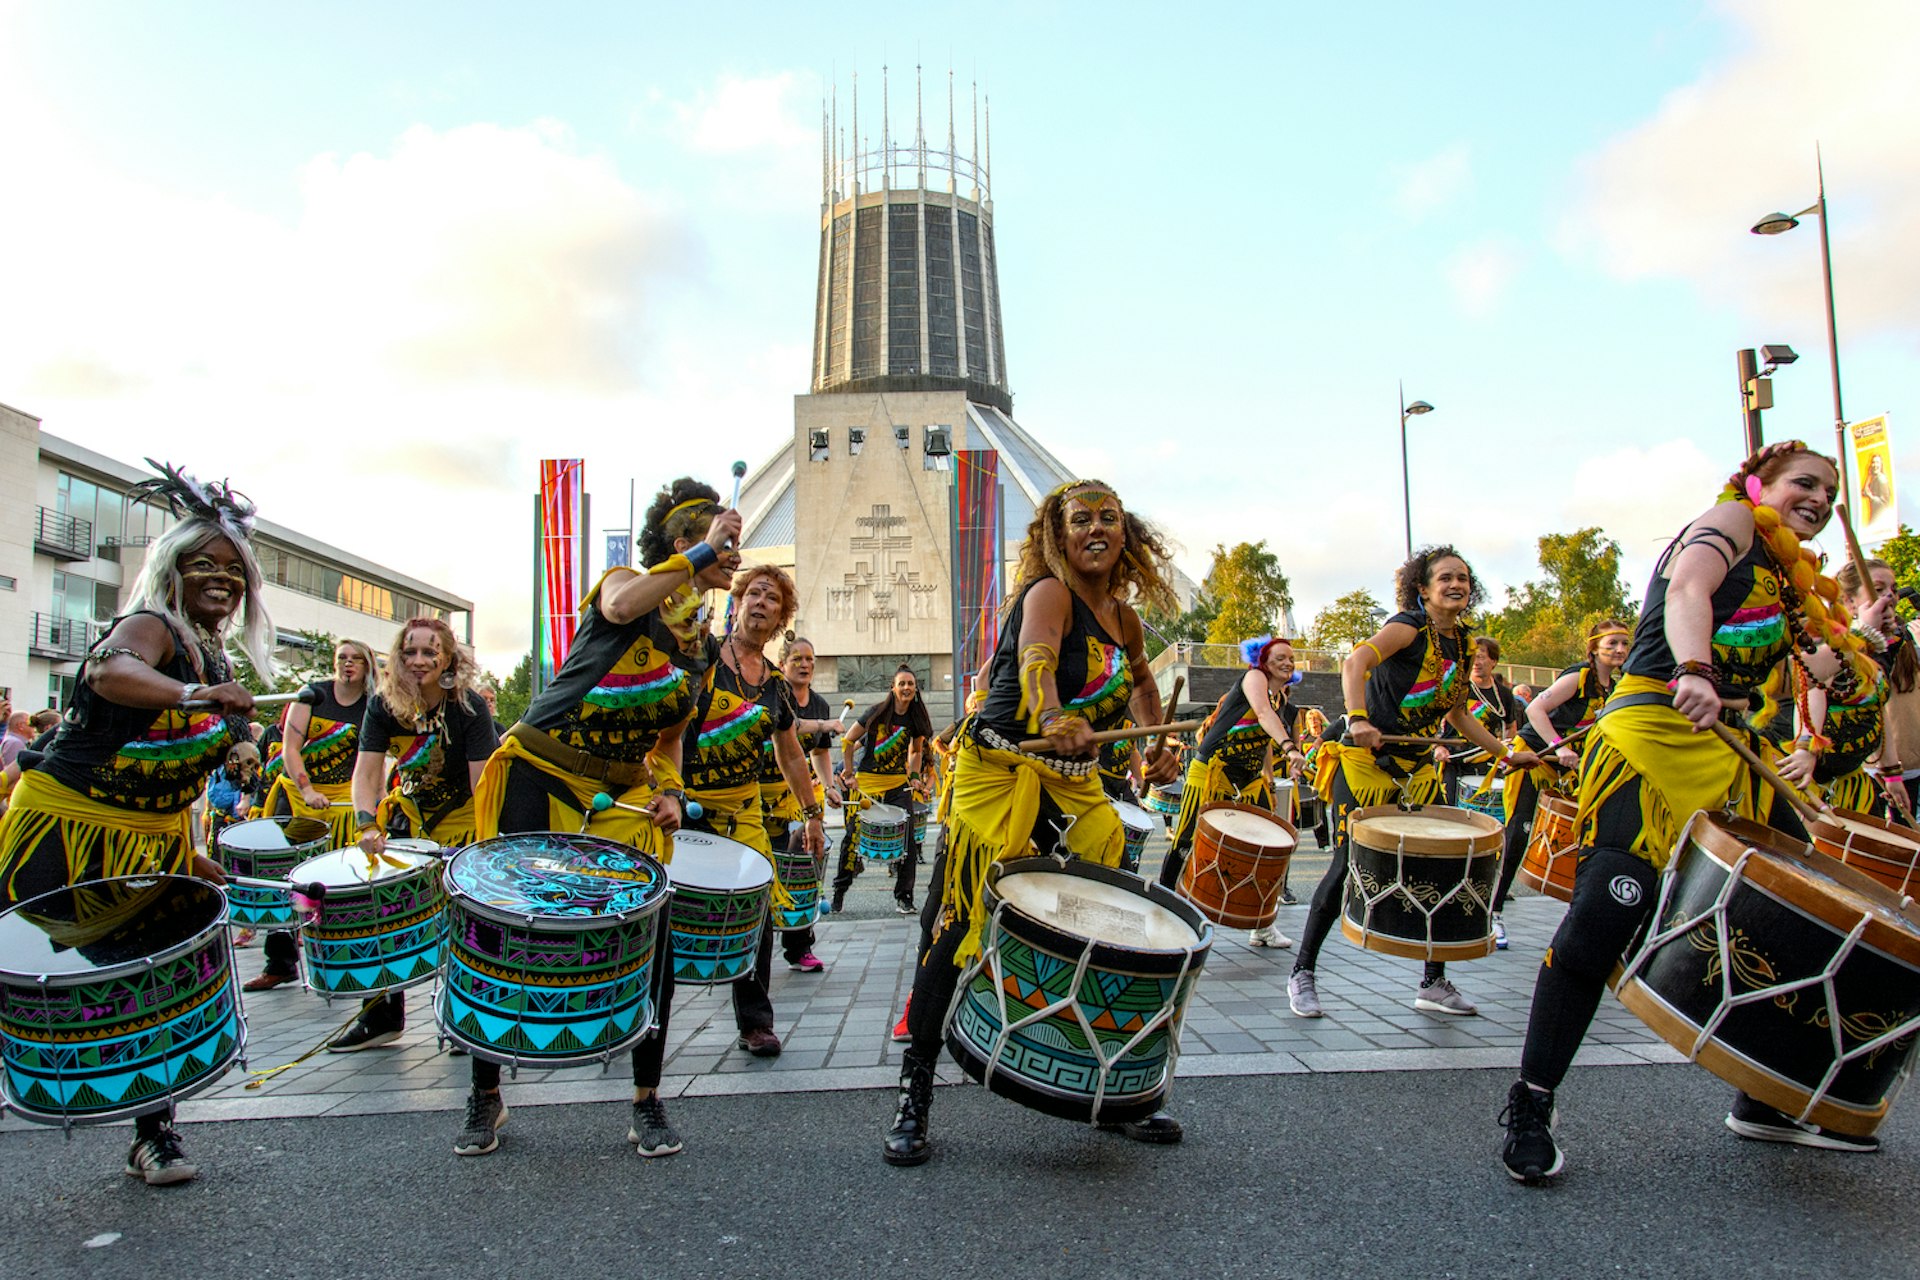 Drummers participate in the Brazilica festival, celebrating Brazilian culture, in Liverpool, England, United Kingdom